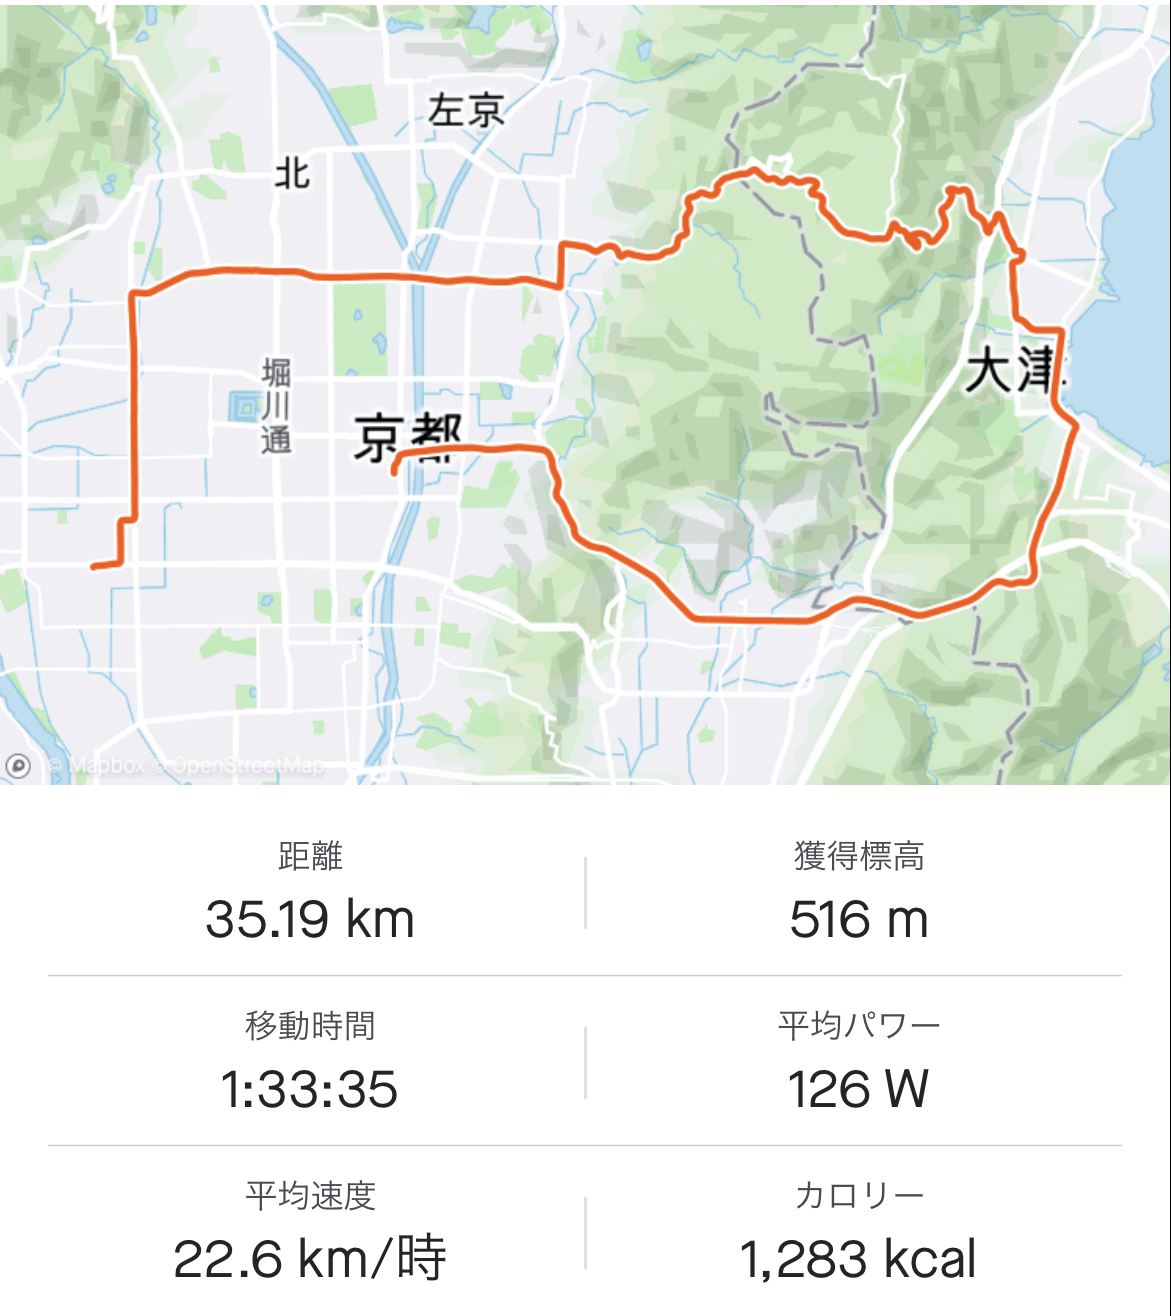 【スタッフバイク】松月の新車出来上がりました【SUPER SIX EVO Hi-MOD DISC】 | 京都でスポーツ自転車をお探しならY